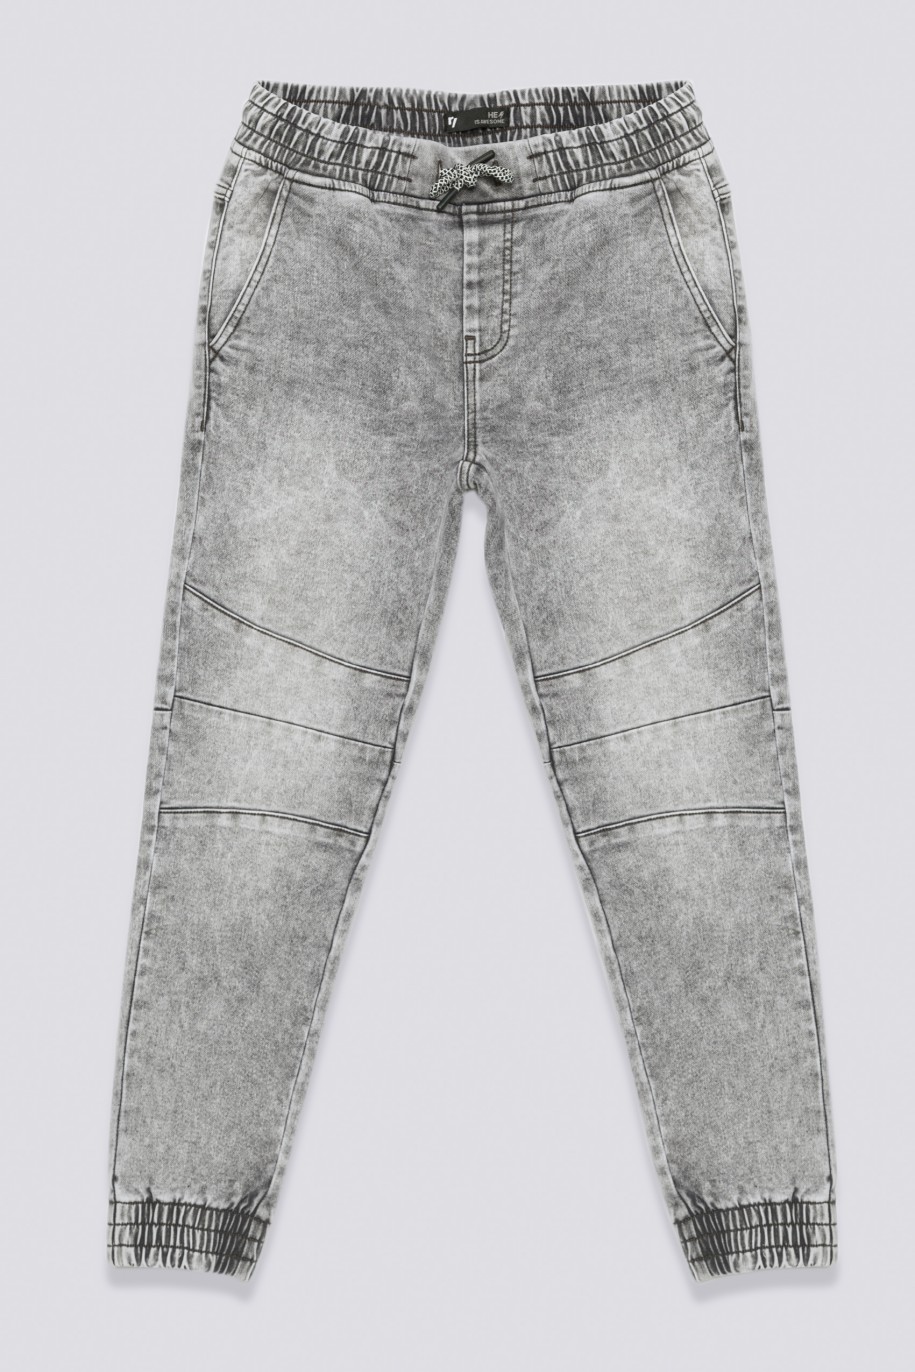 Szare jeansy typu jogger ze ściągaczami dla chłopaka - 33587